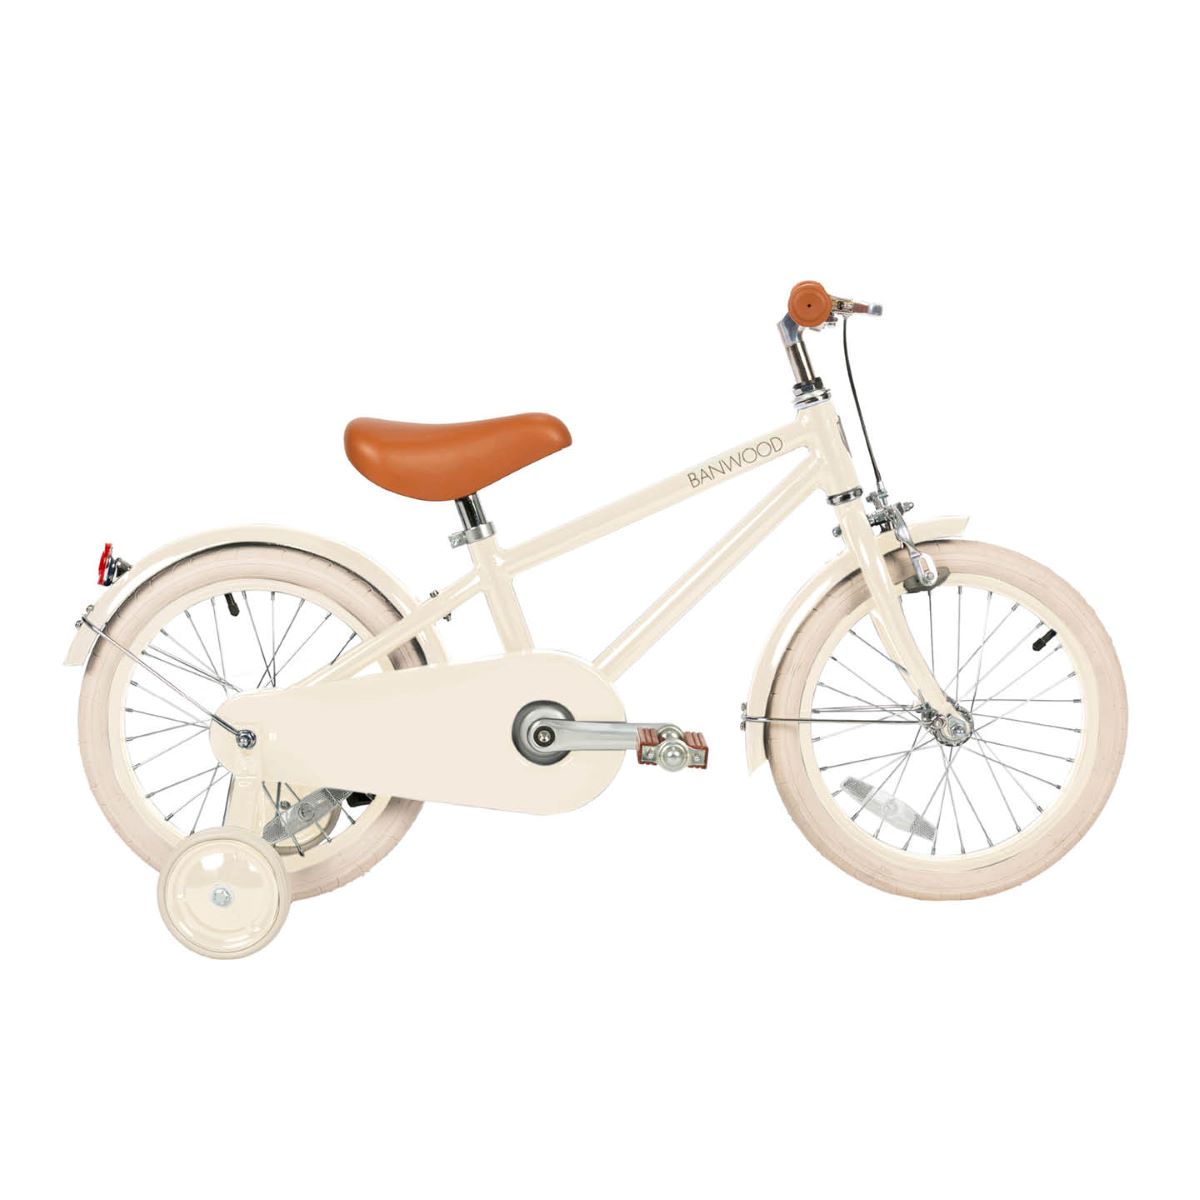 Deze leuke Banwood fiets in classic vintage cream is een superleuke kinderfiets met een retro design. Deze fiets heeft een Scandi look en heeft unieke trappers van palissanderhout. Ook heeft de fiets een mooie roomwitte kleur. VanZus